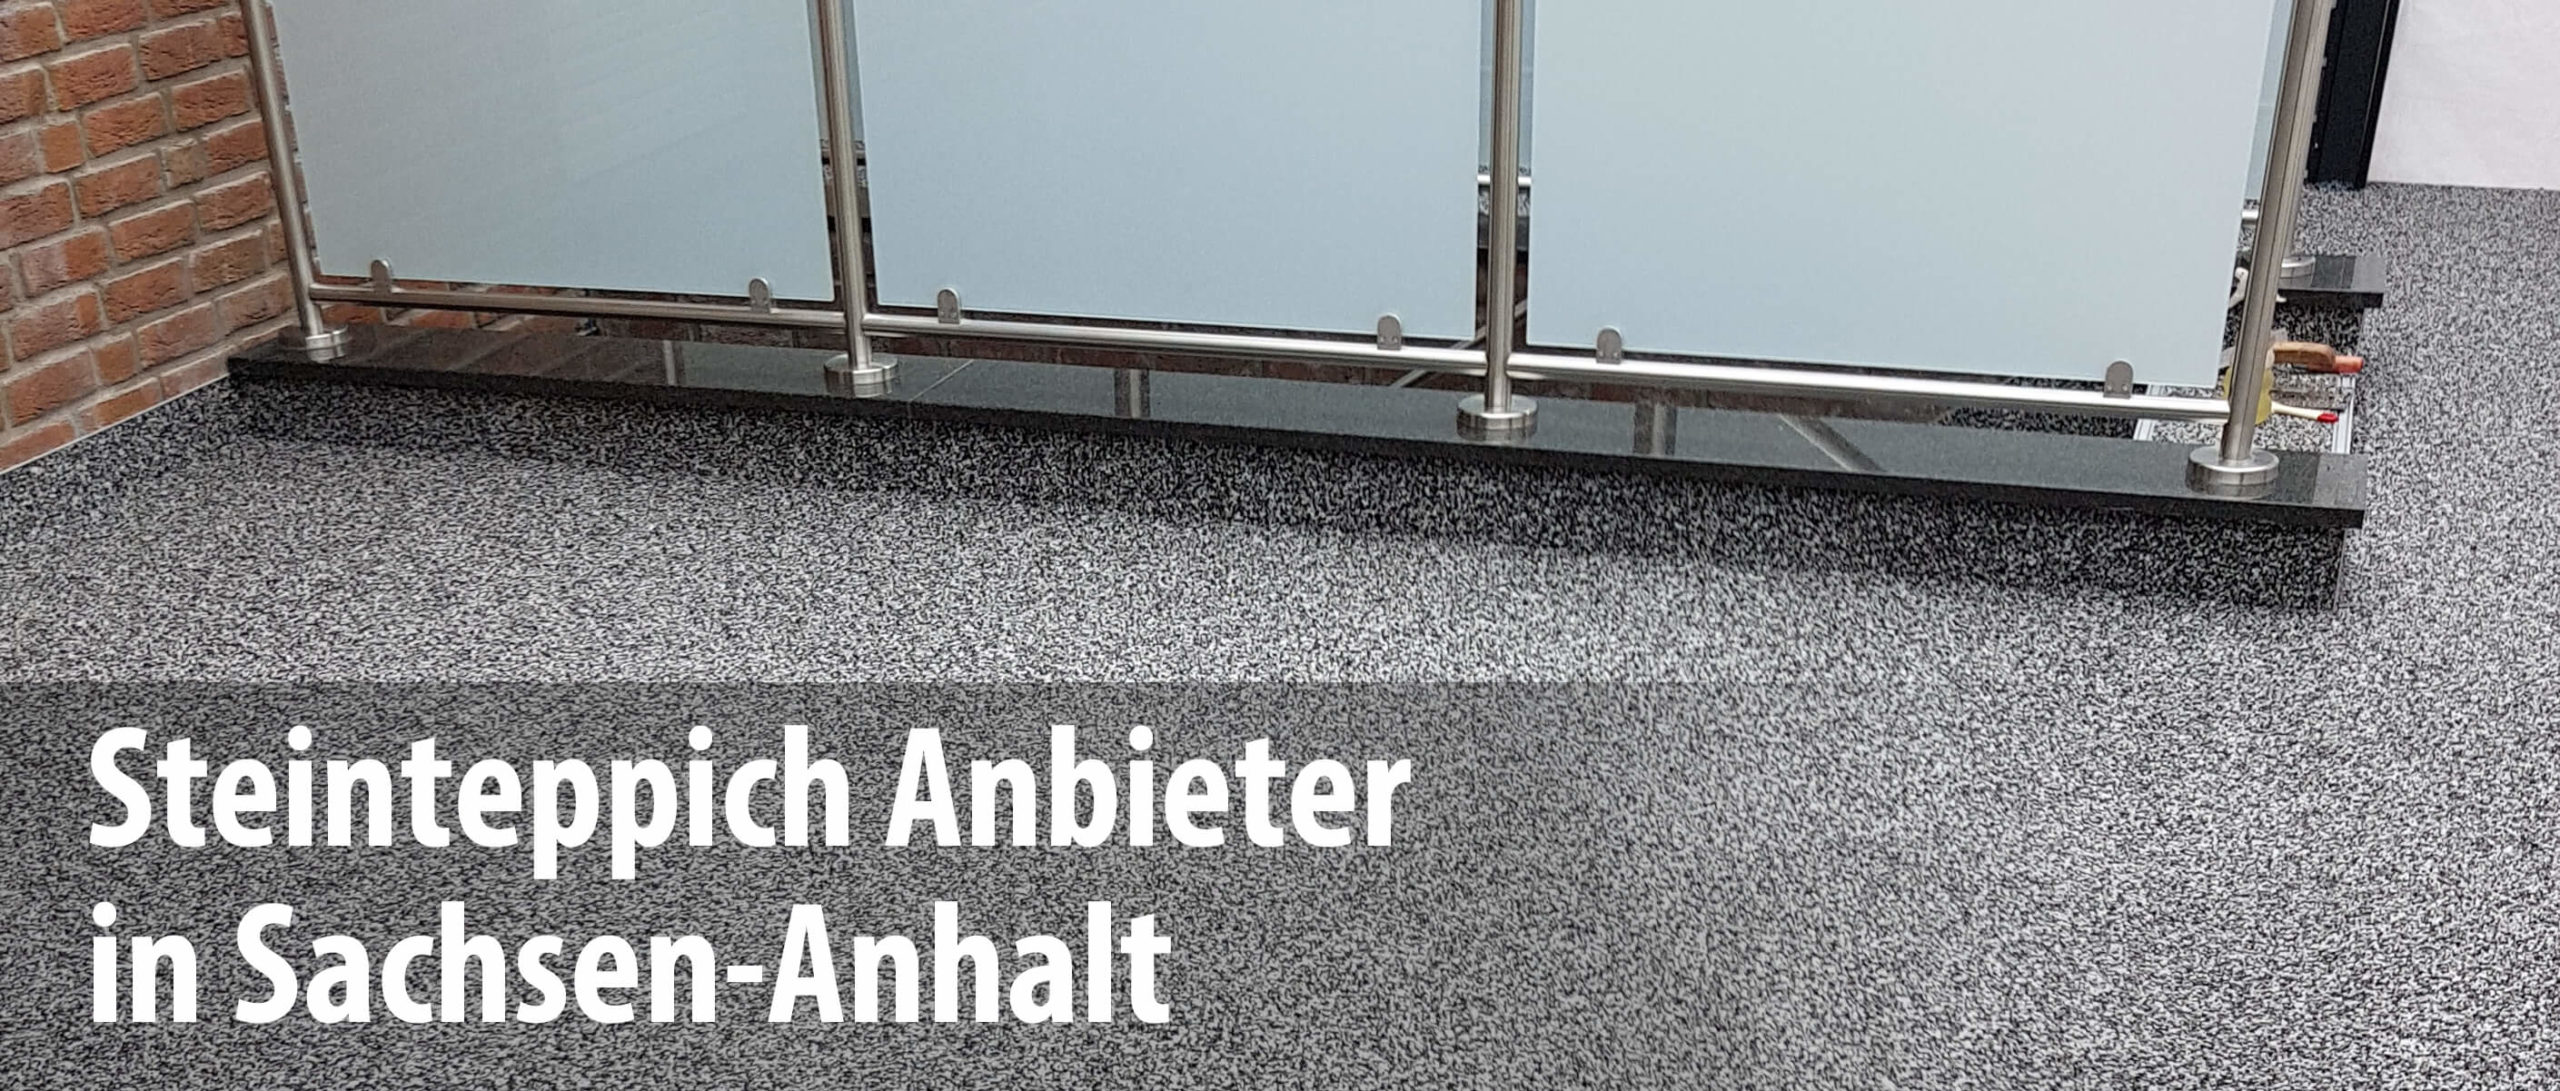 Wir arbeiten mit Steinteppich-Anbietern in Sachsen-Anhalt zusammen und bieten mit unseren Partnern die professionelle Sanierung und Abdichtung von Balkonen und Terrassen.